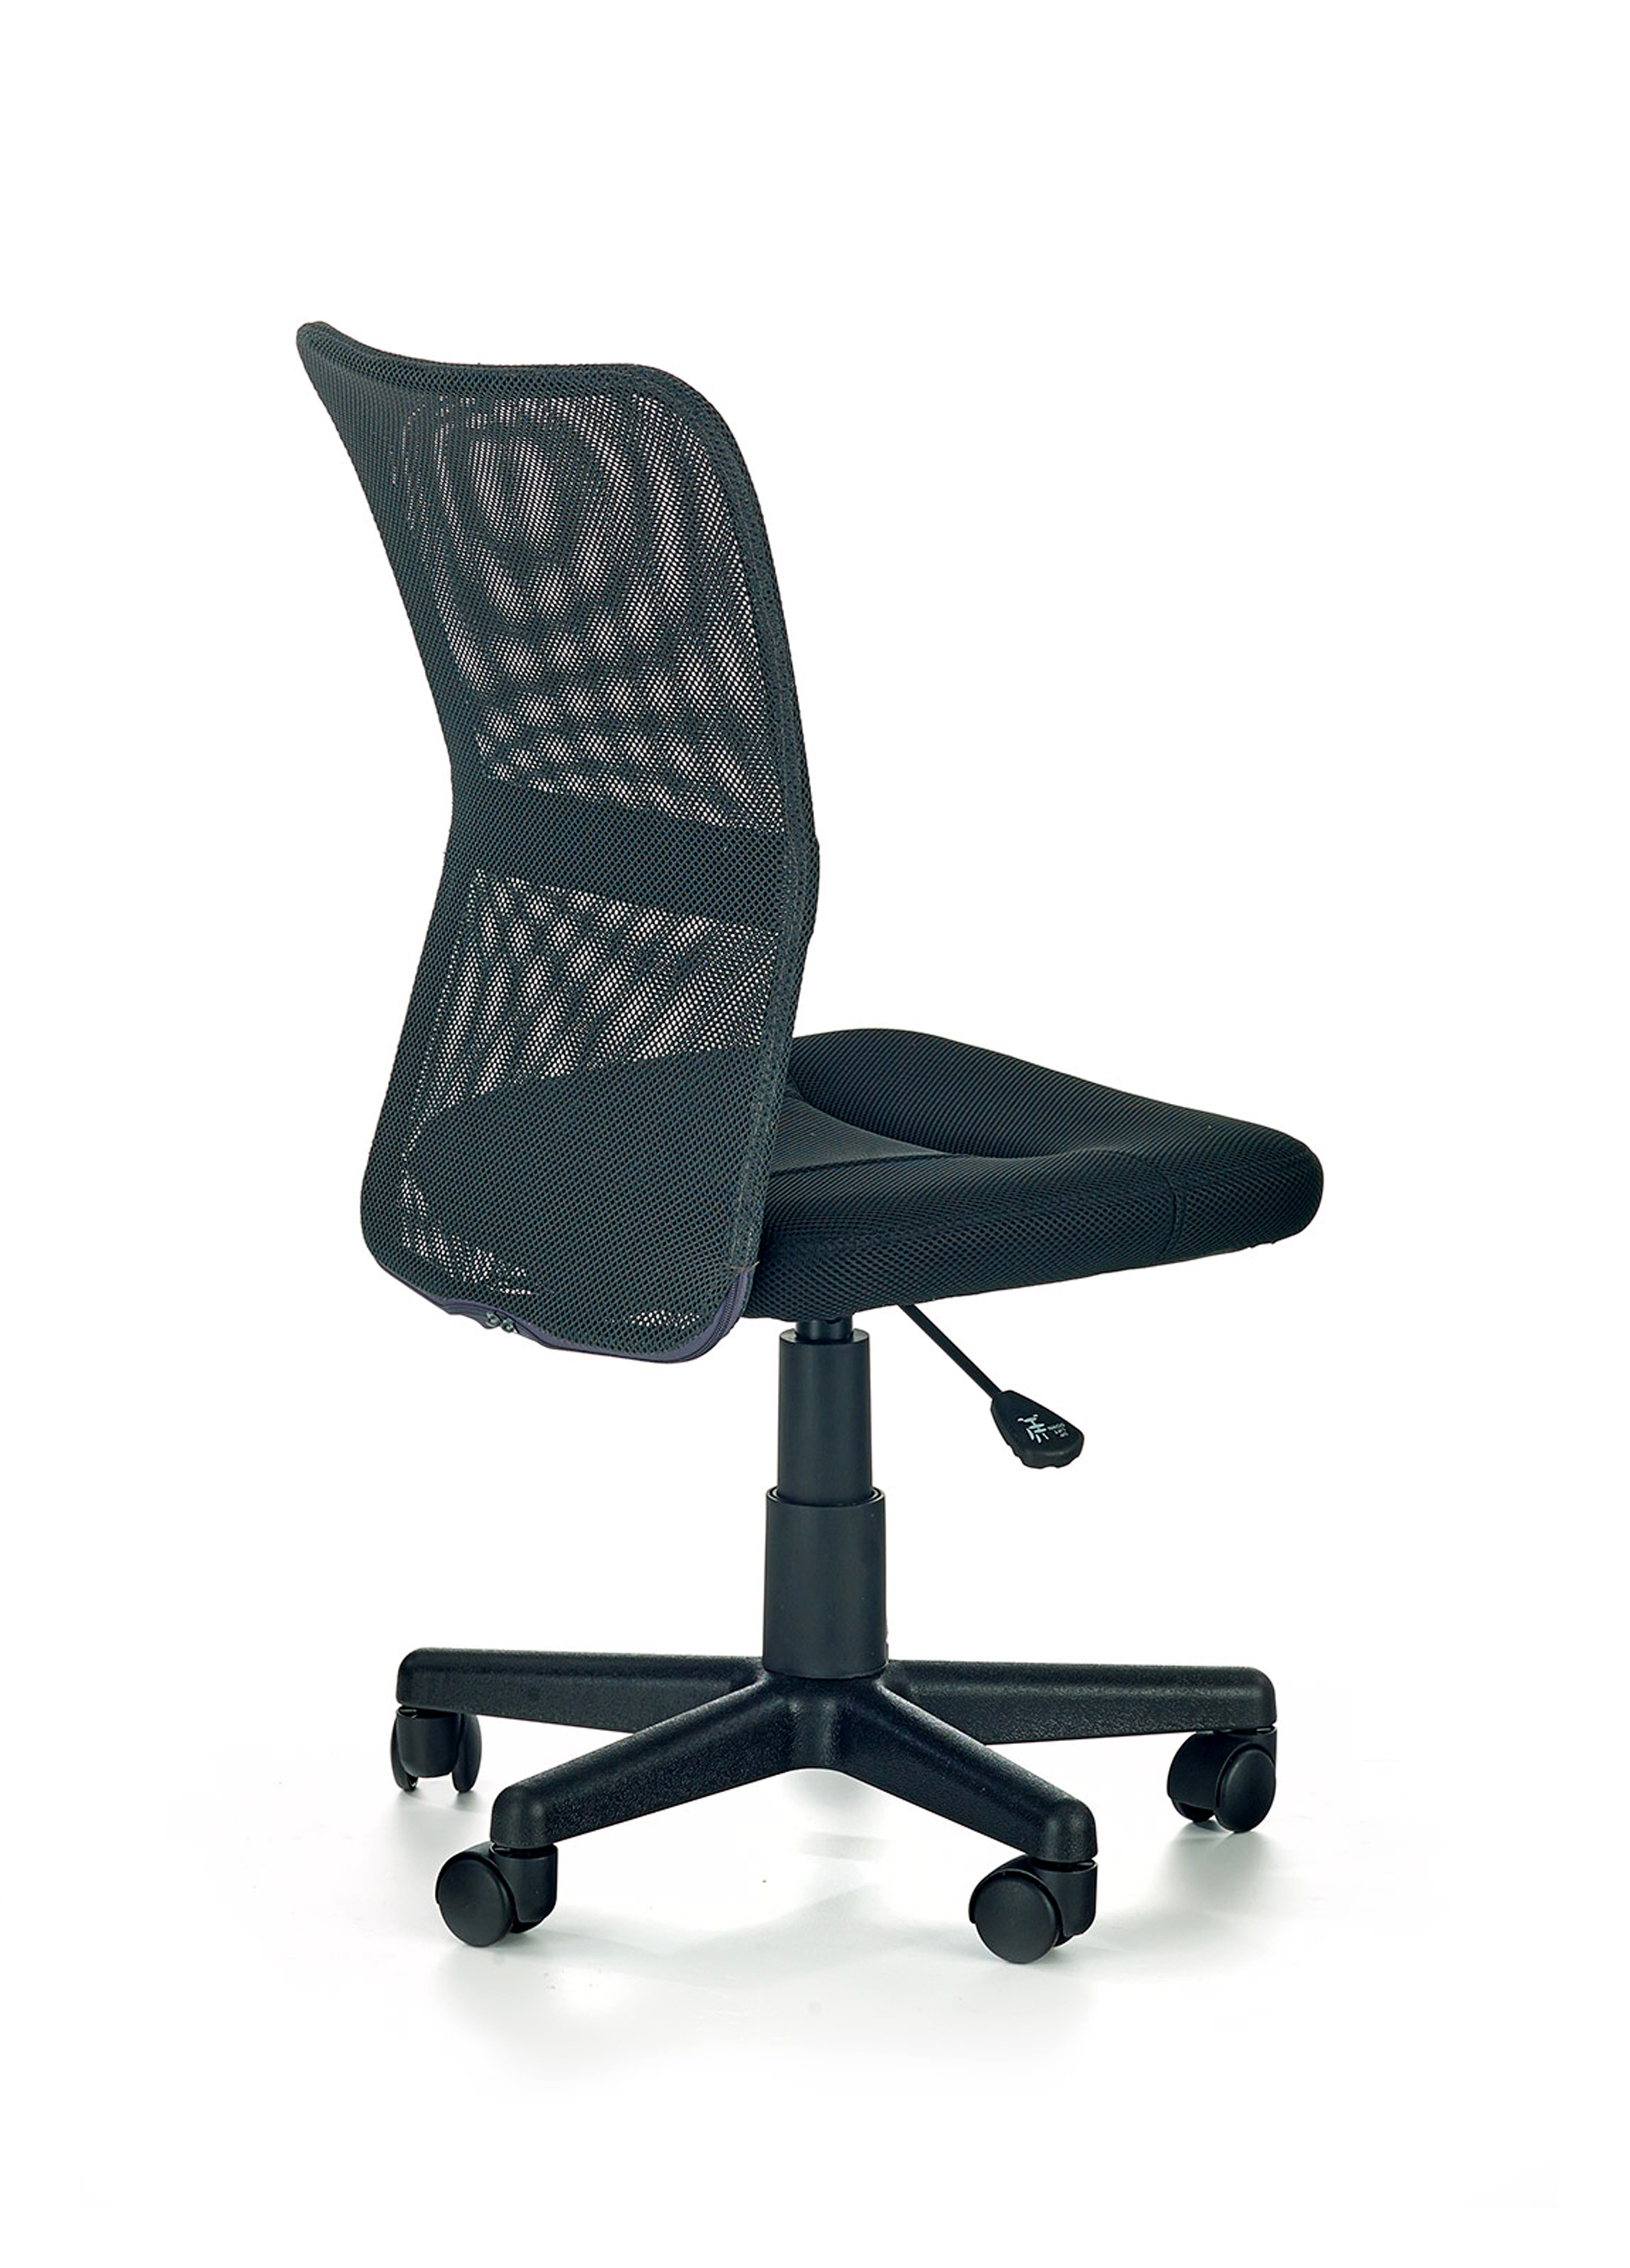 Fotel biurowy Dingo - popiel / czarny fotel z siatką na oparciu